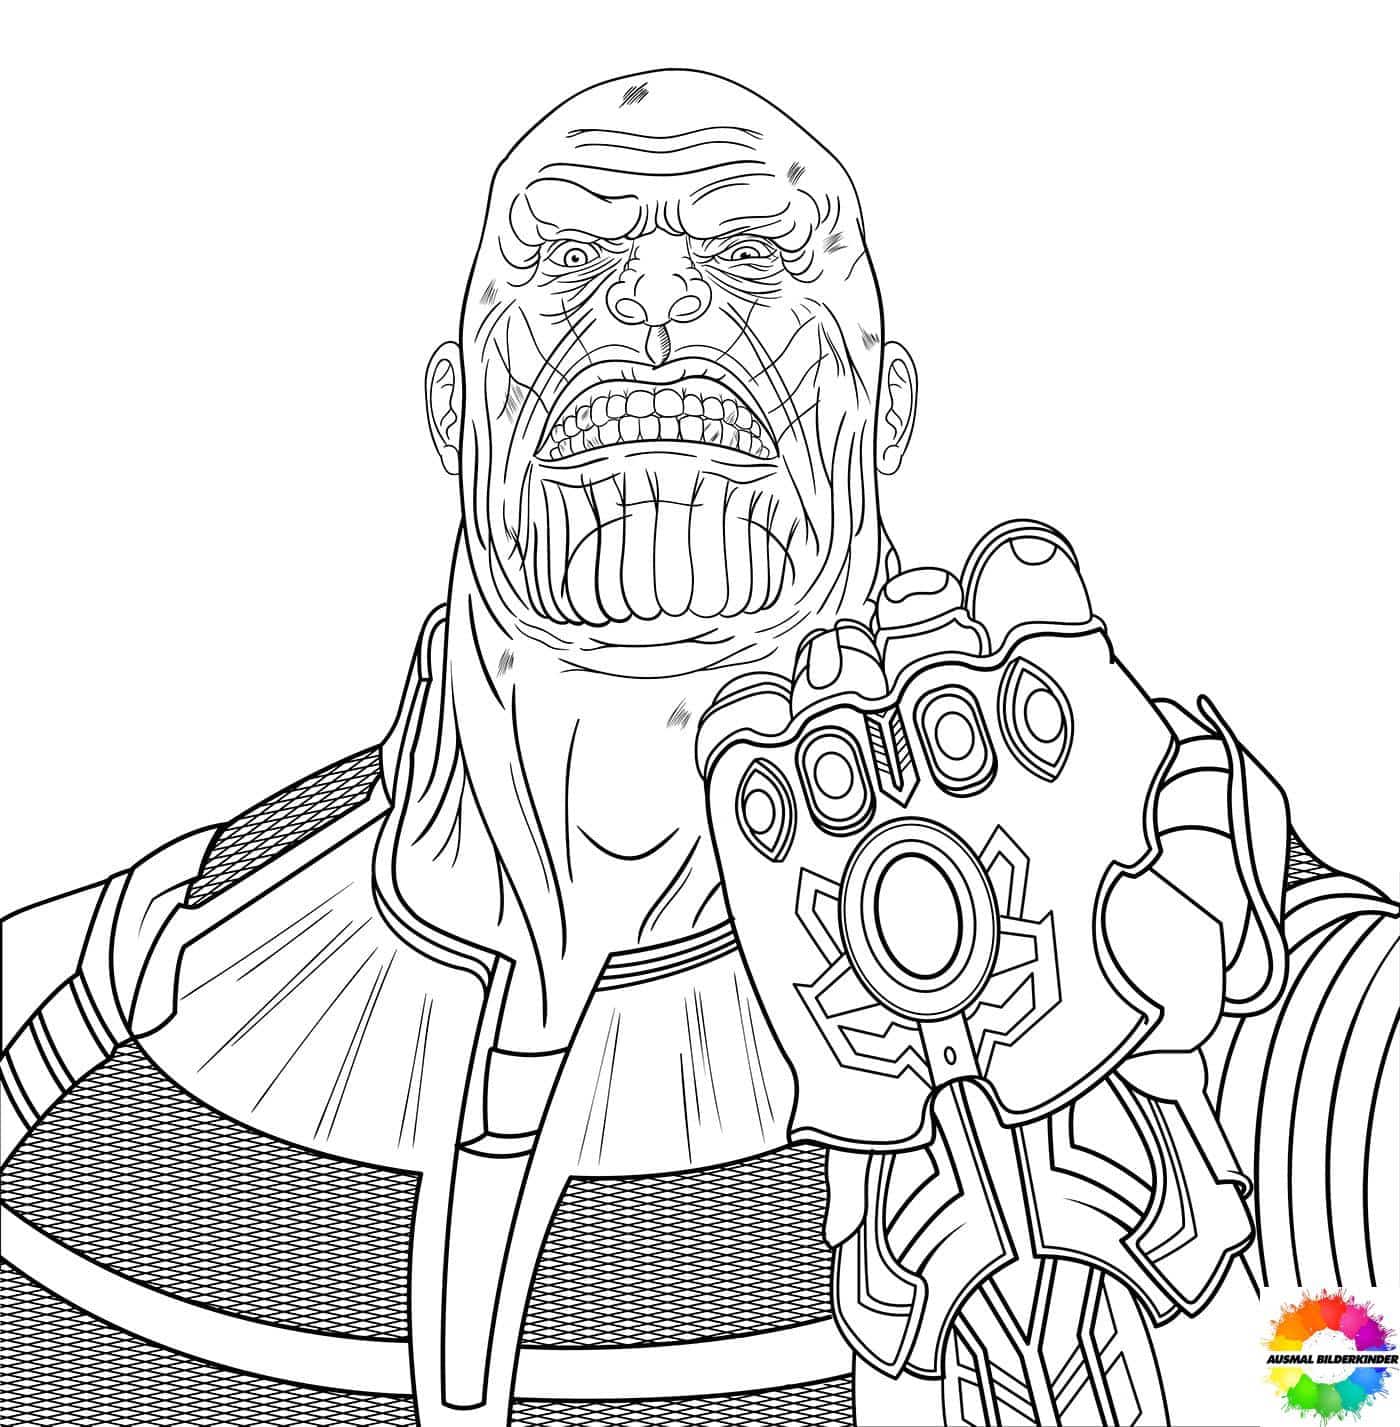 Thanos-ausmalbilder-ausmalbilderkinder-de-45